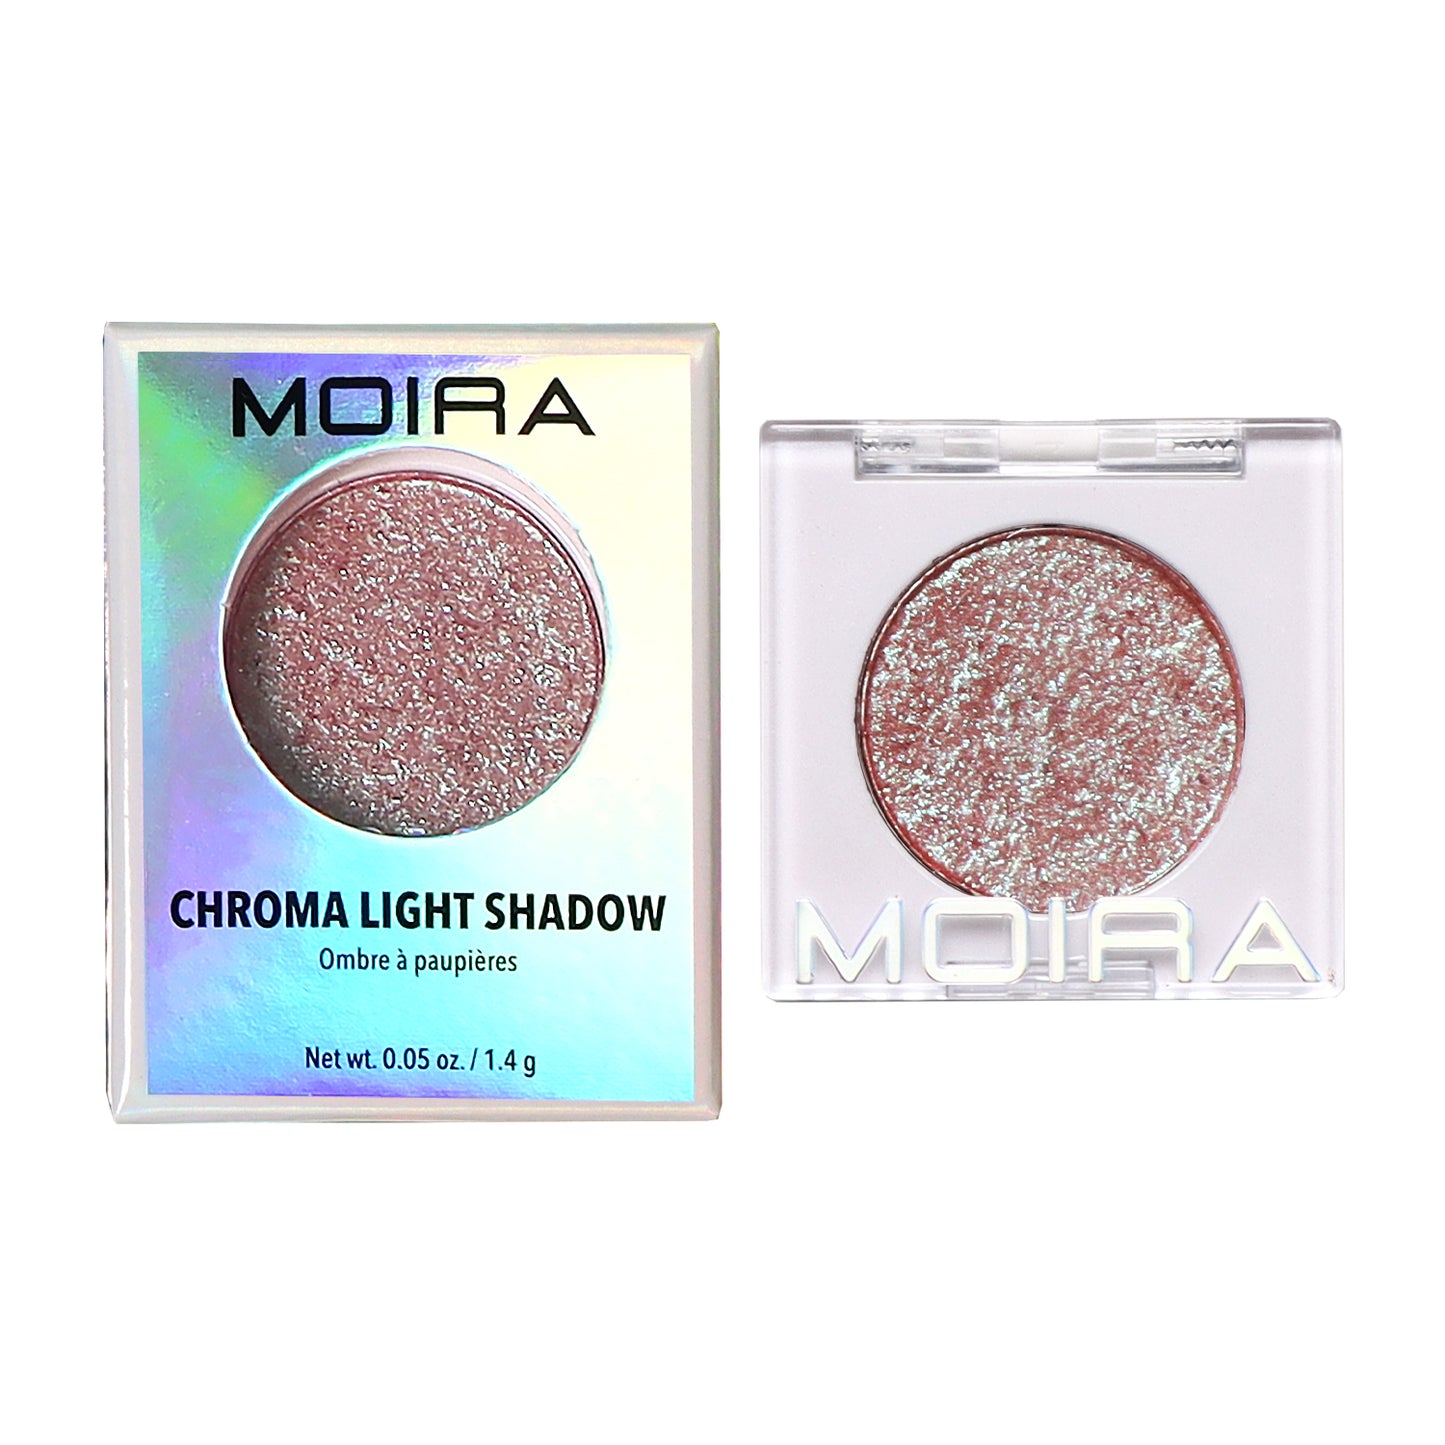 Moira Chroma Light Shadow summer glitter makeup eyeshadow